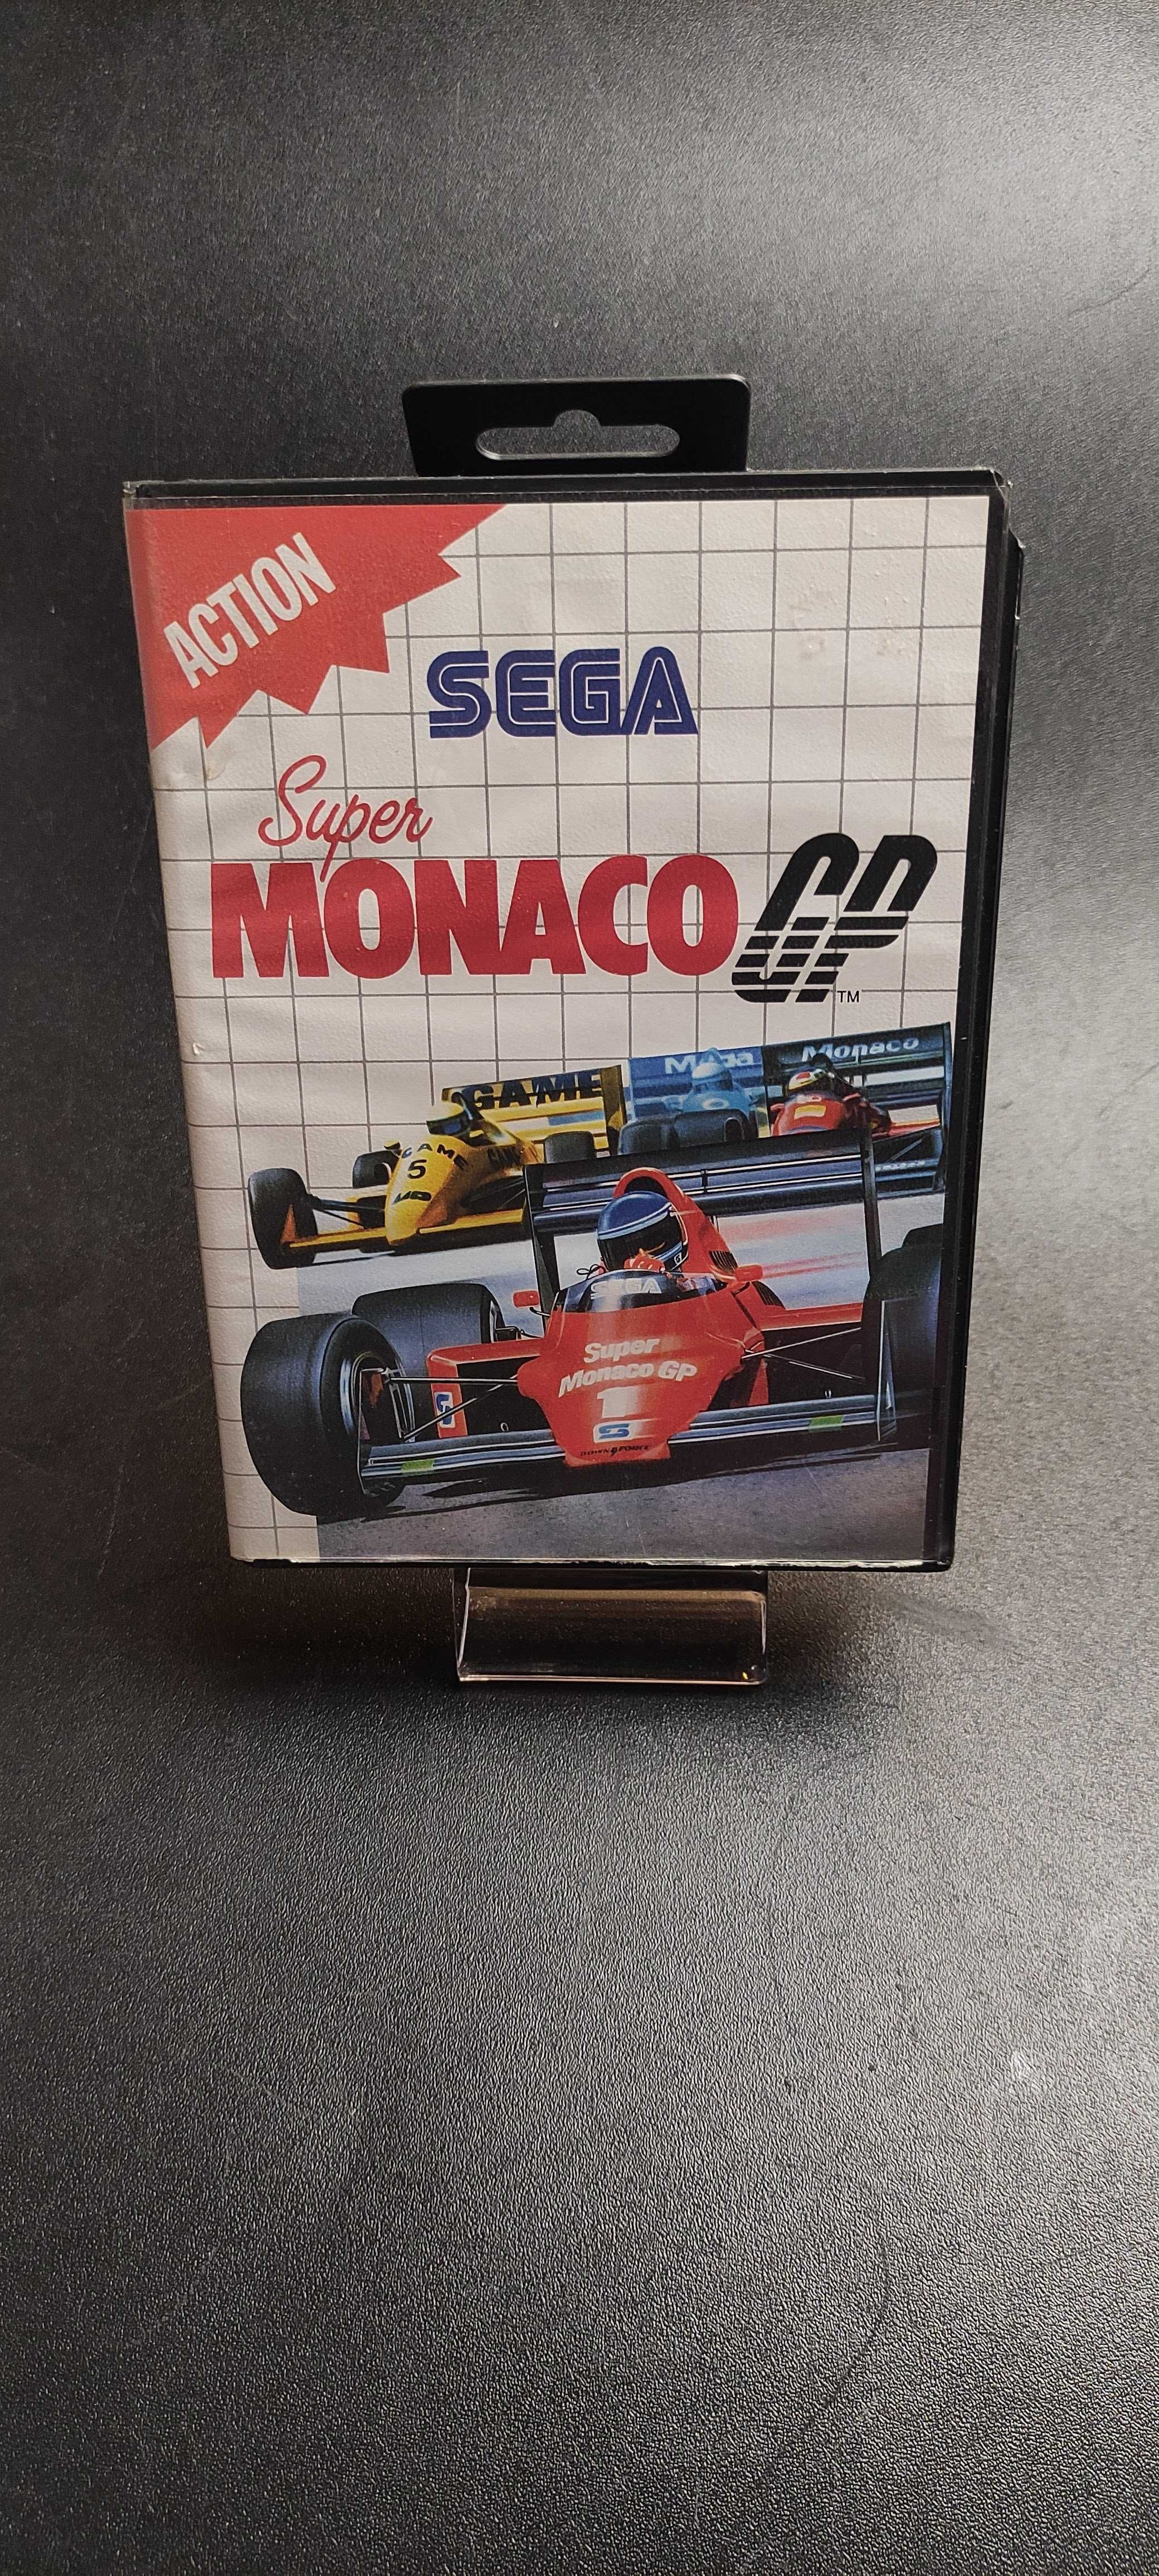 Super Monaco GP - Master System